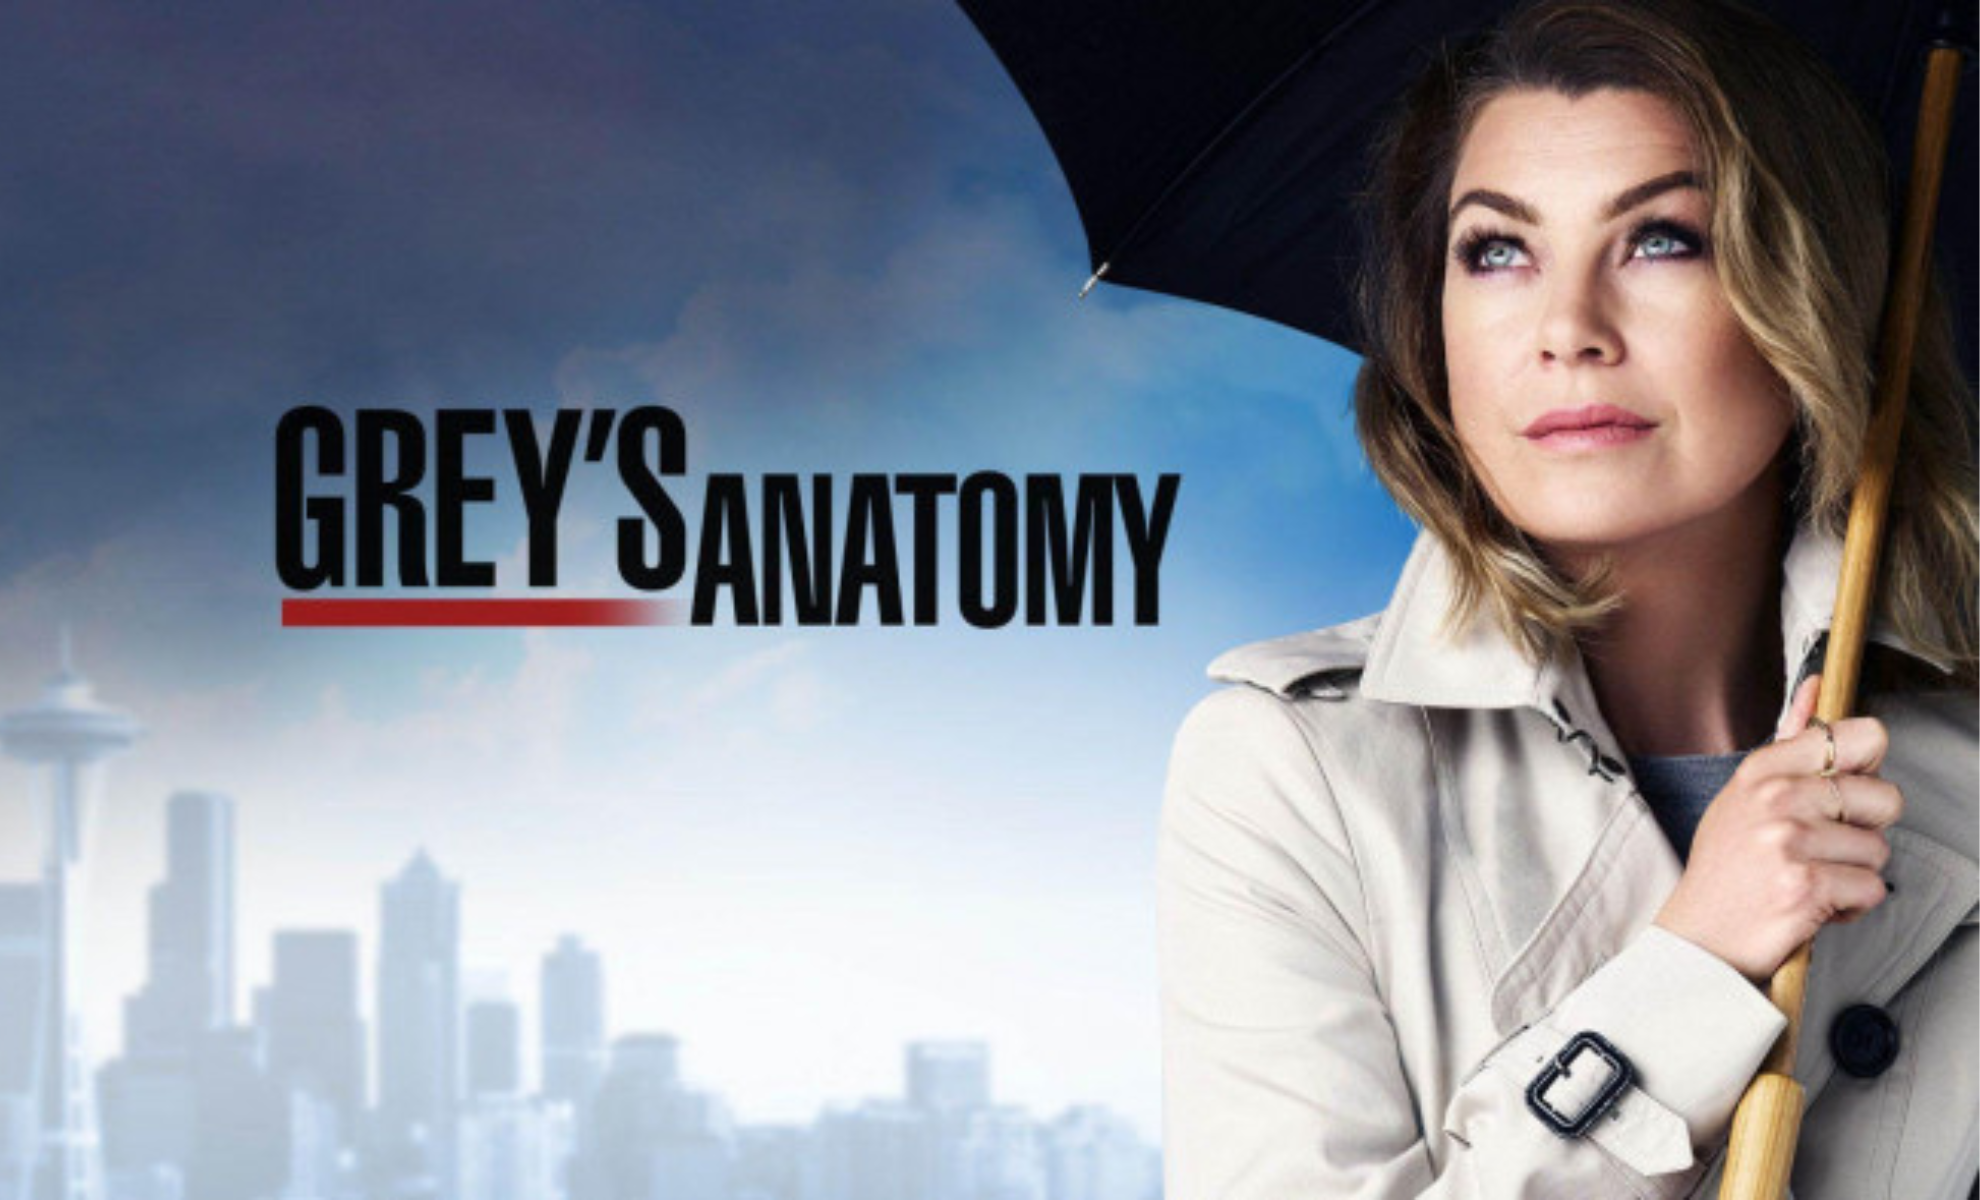 Grey's Anatomy Meredith quitte Seattle dans une bande-annonce émouvante